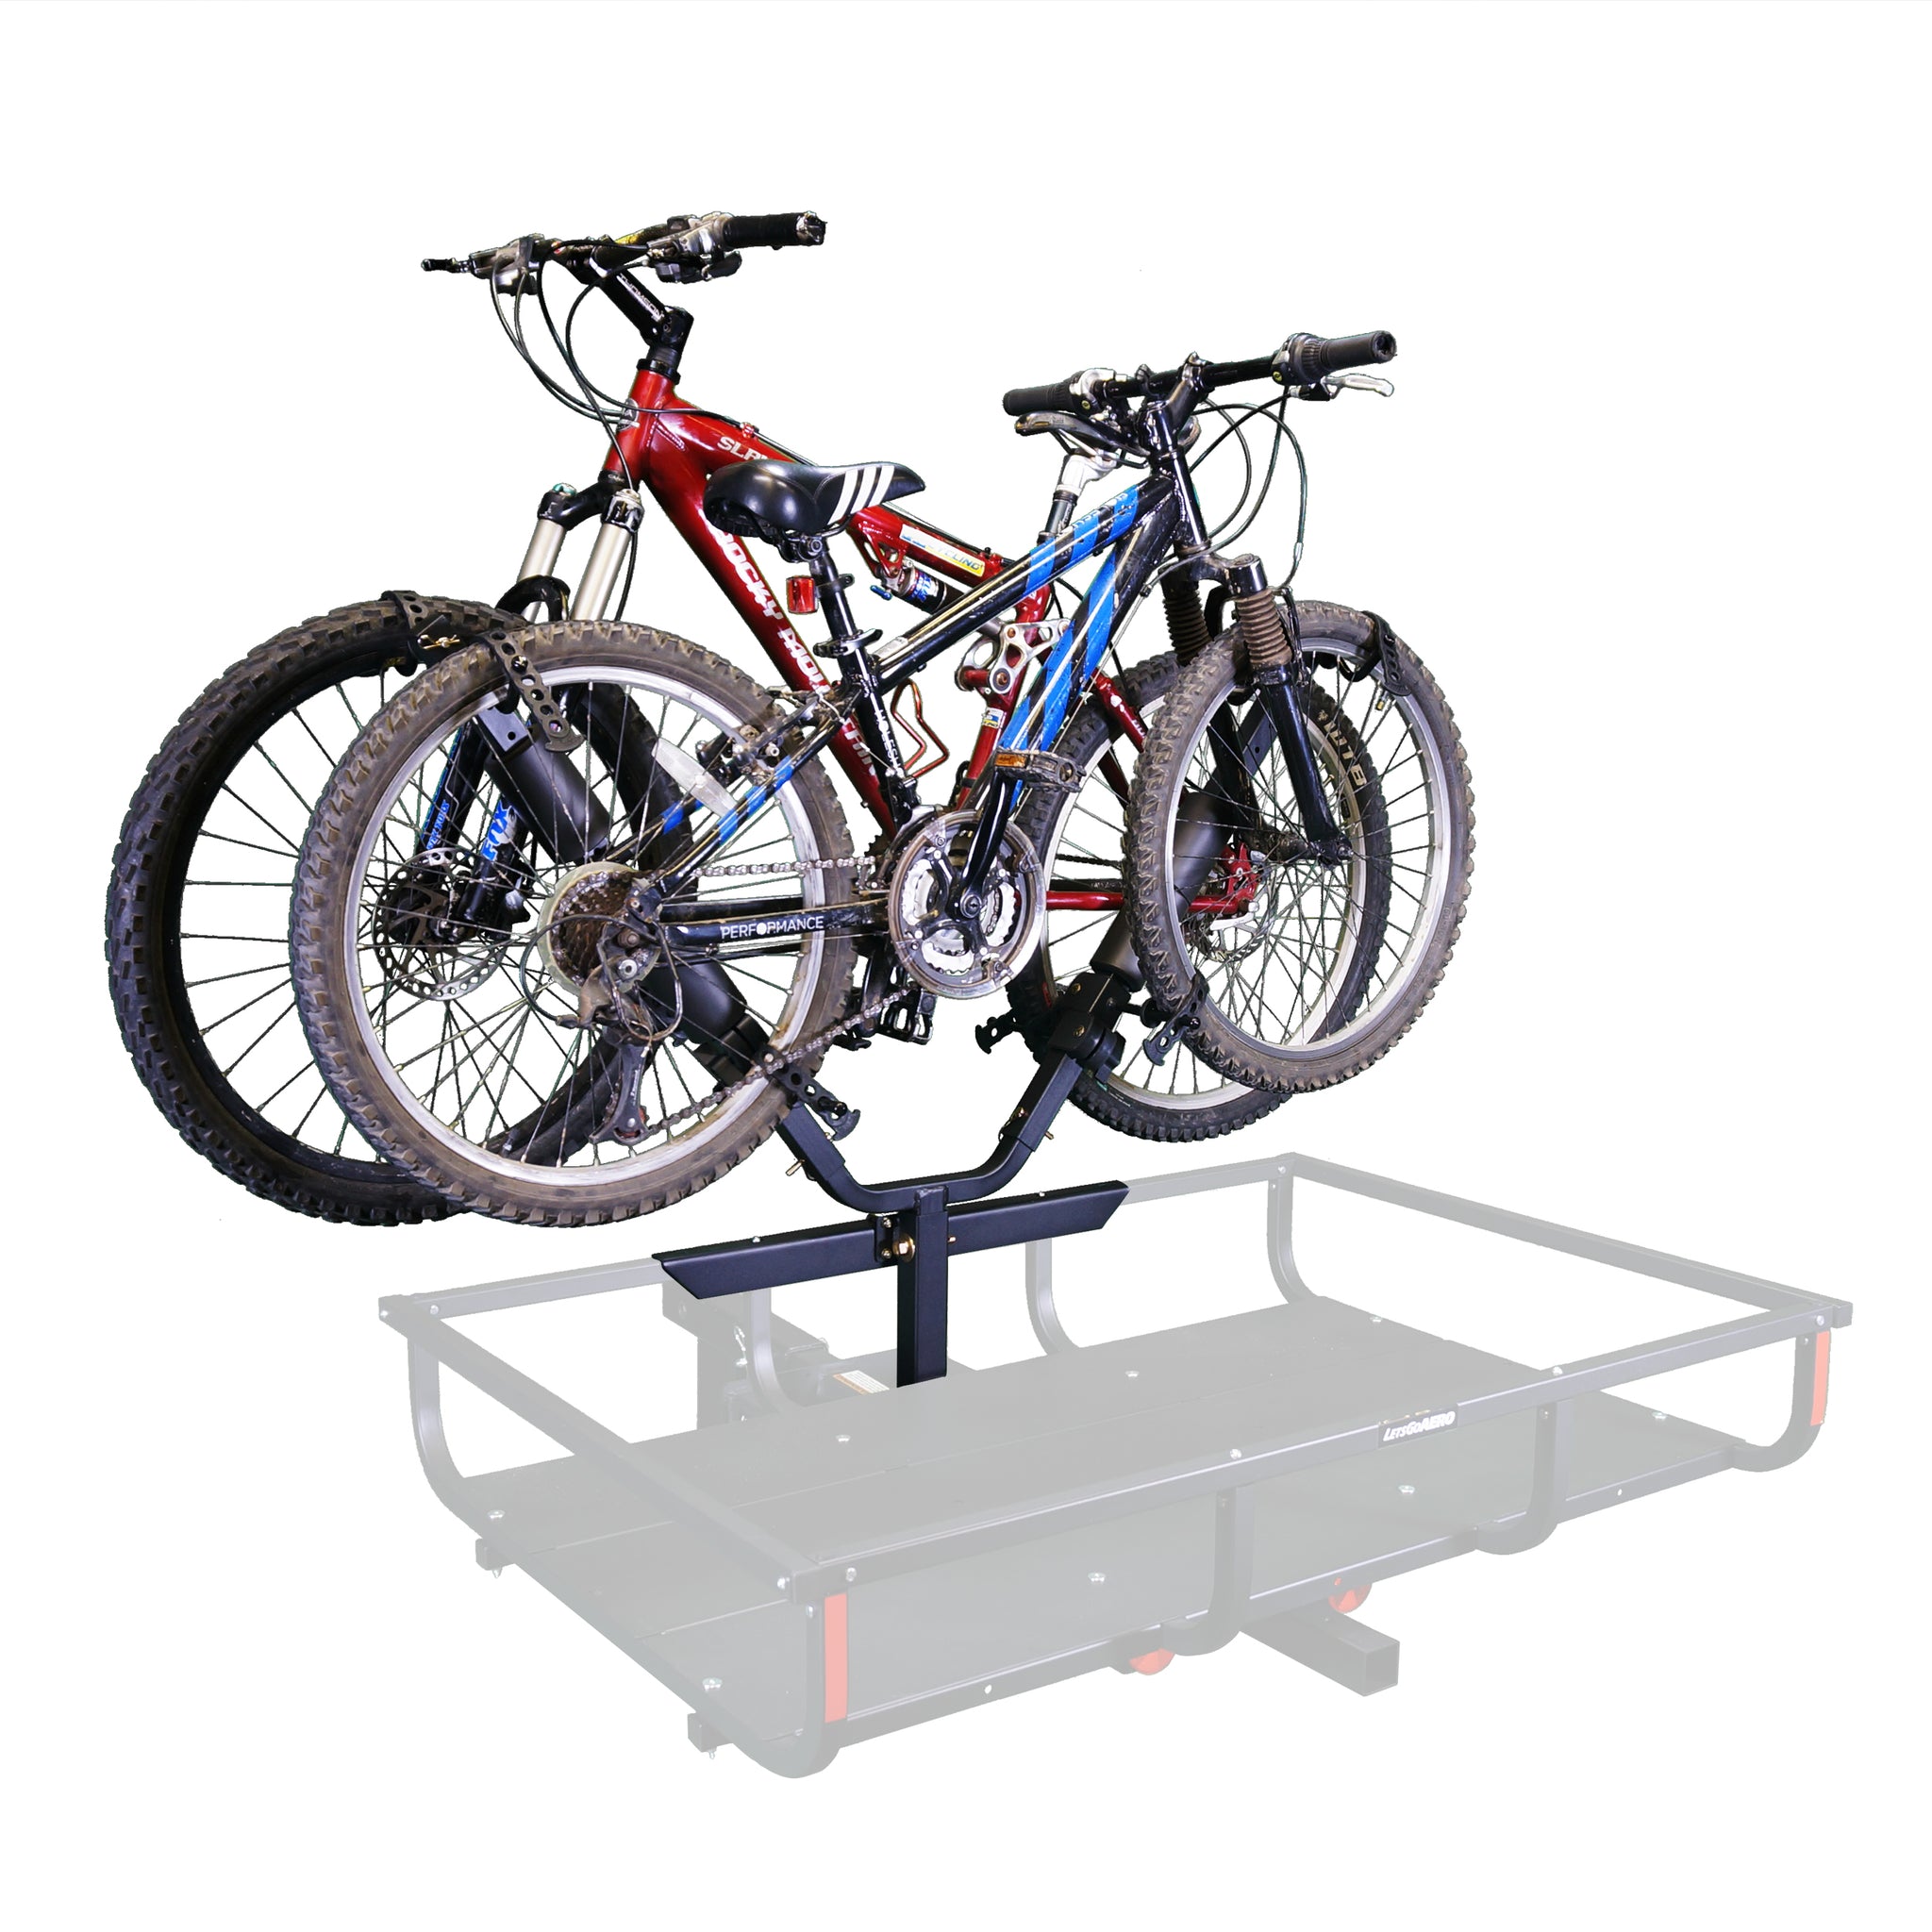 Rack-IT Two-Bike Accessory Carrier